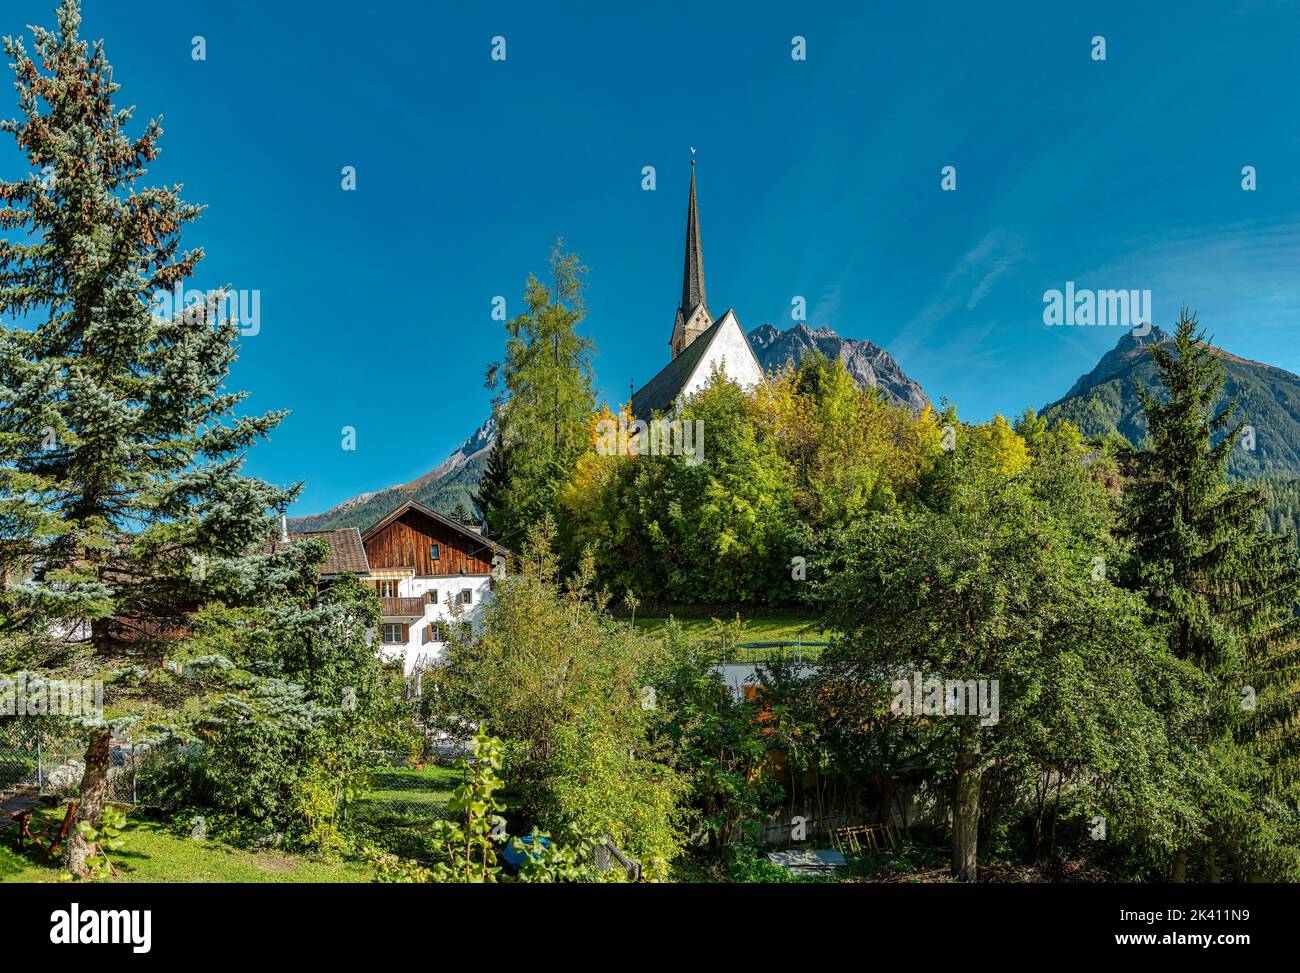 Chiesa in cima ad una collina quasi nascosta da alberi *** Caption locale *** Scuol, Graubünden, Svizzera, chiesa, monastero, foresta, legno, alberi, autunno, Foto Stock